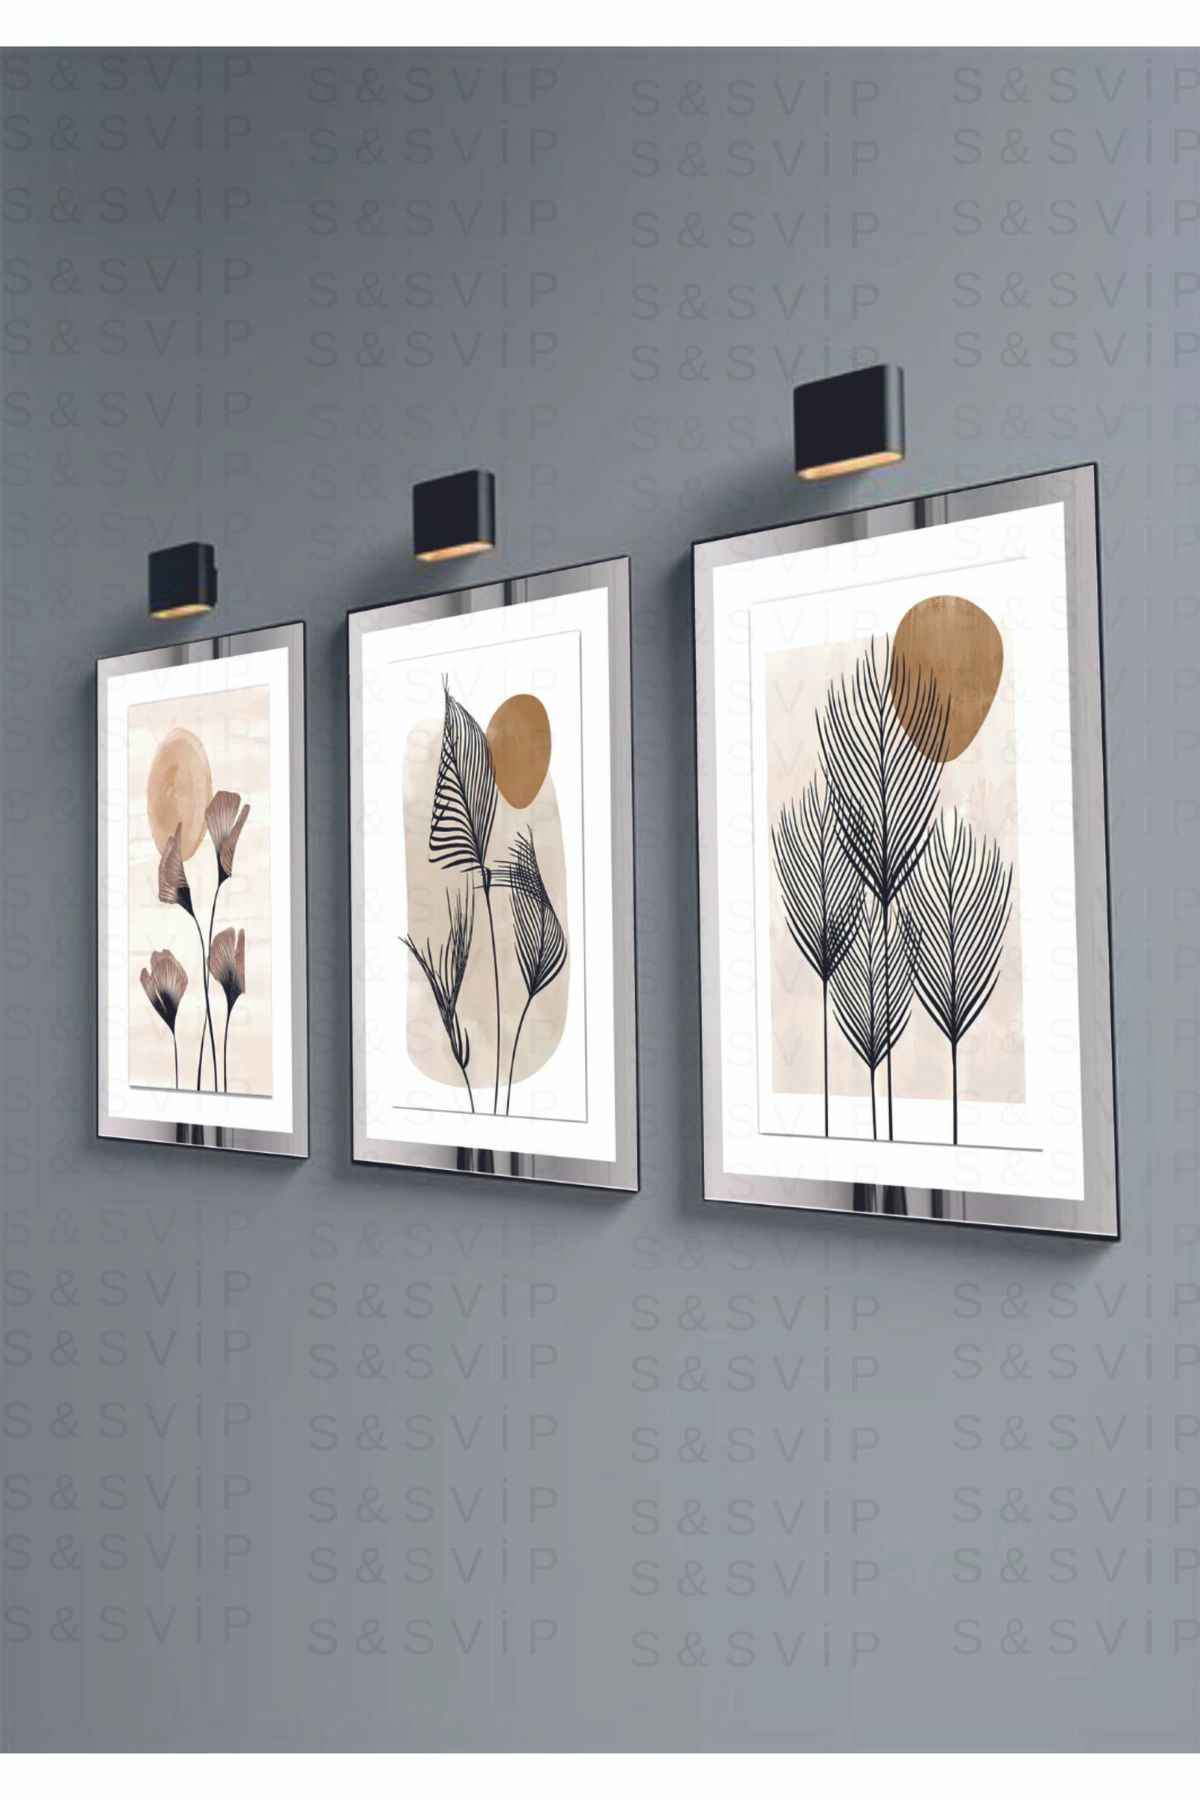 S&S VİP Dekoratif Duvar Dekorasyon Tablo Modelleri Aynalı Pleksi 3 Parça Çiçek Desen Mdf Tablo Set (GÜMÜŞ)